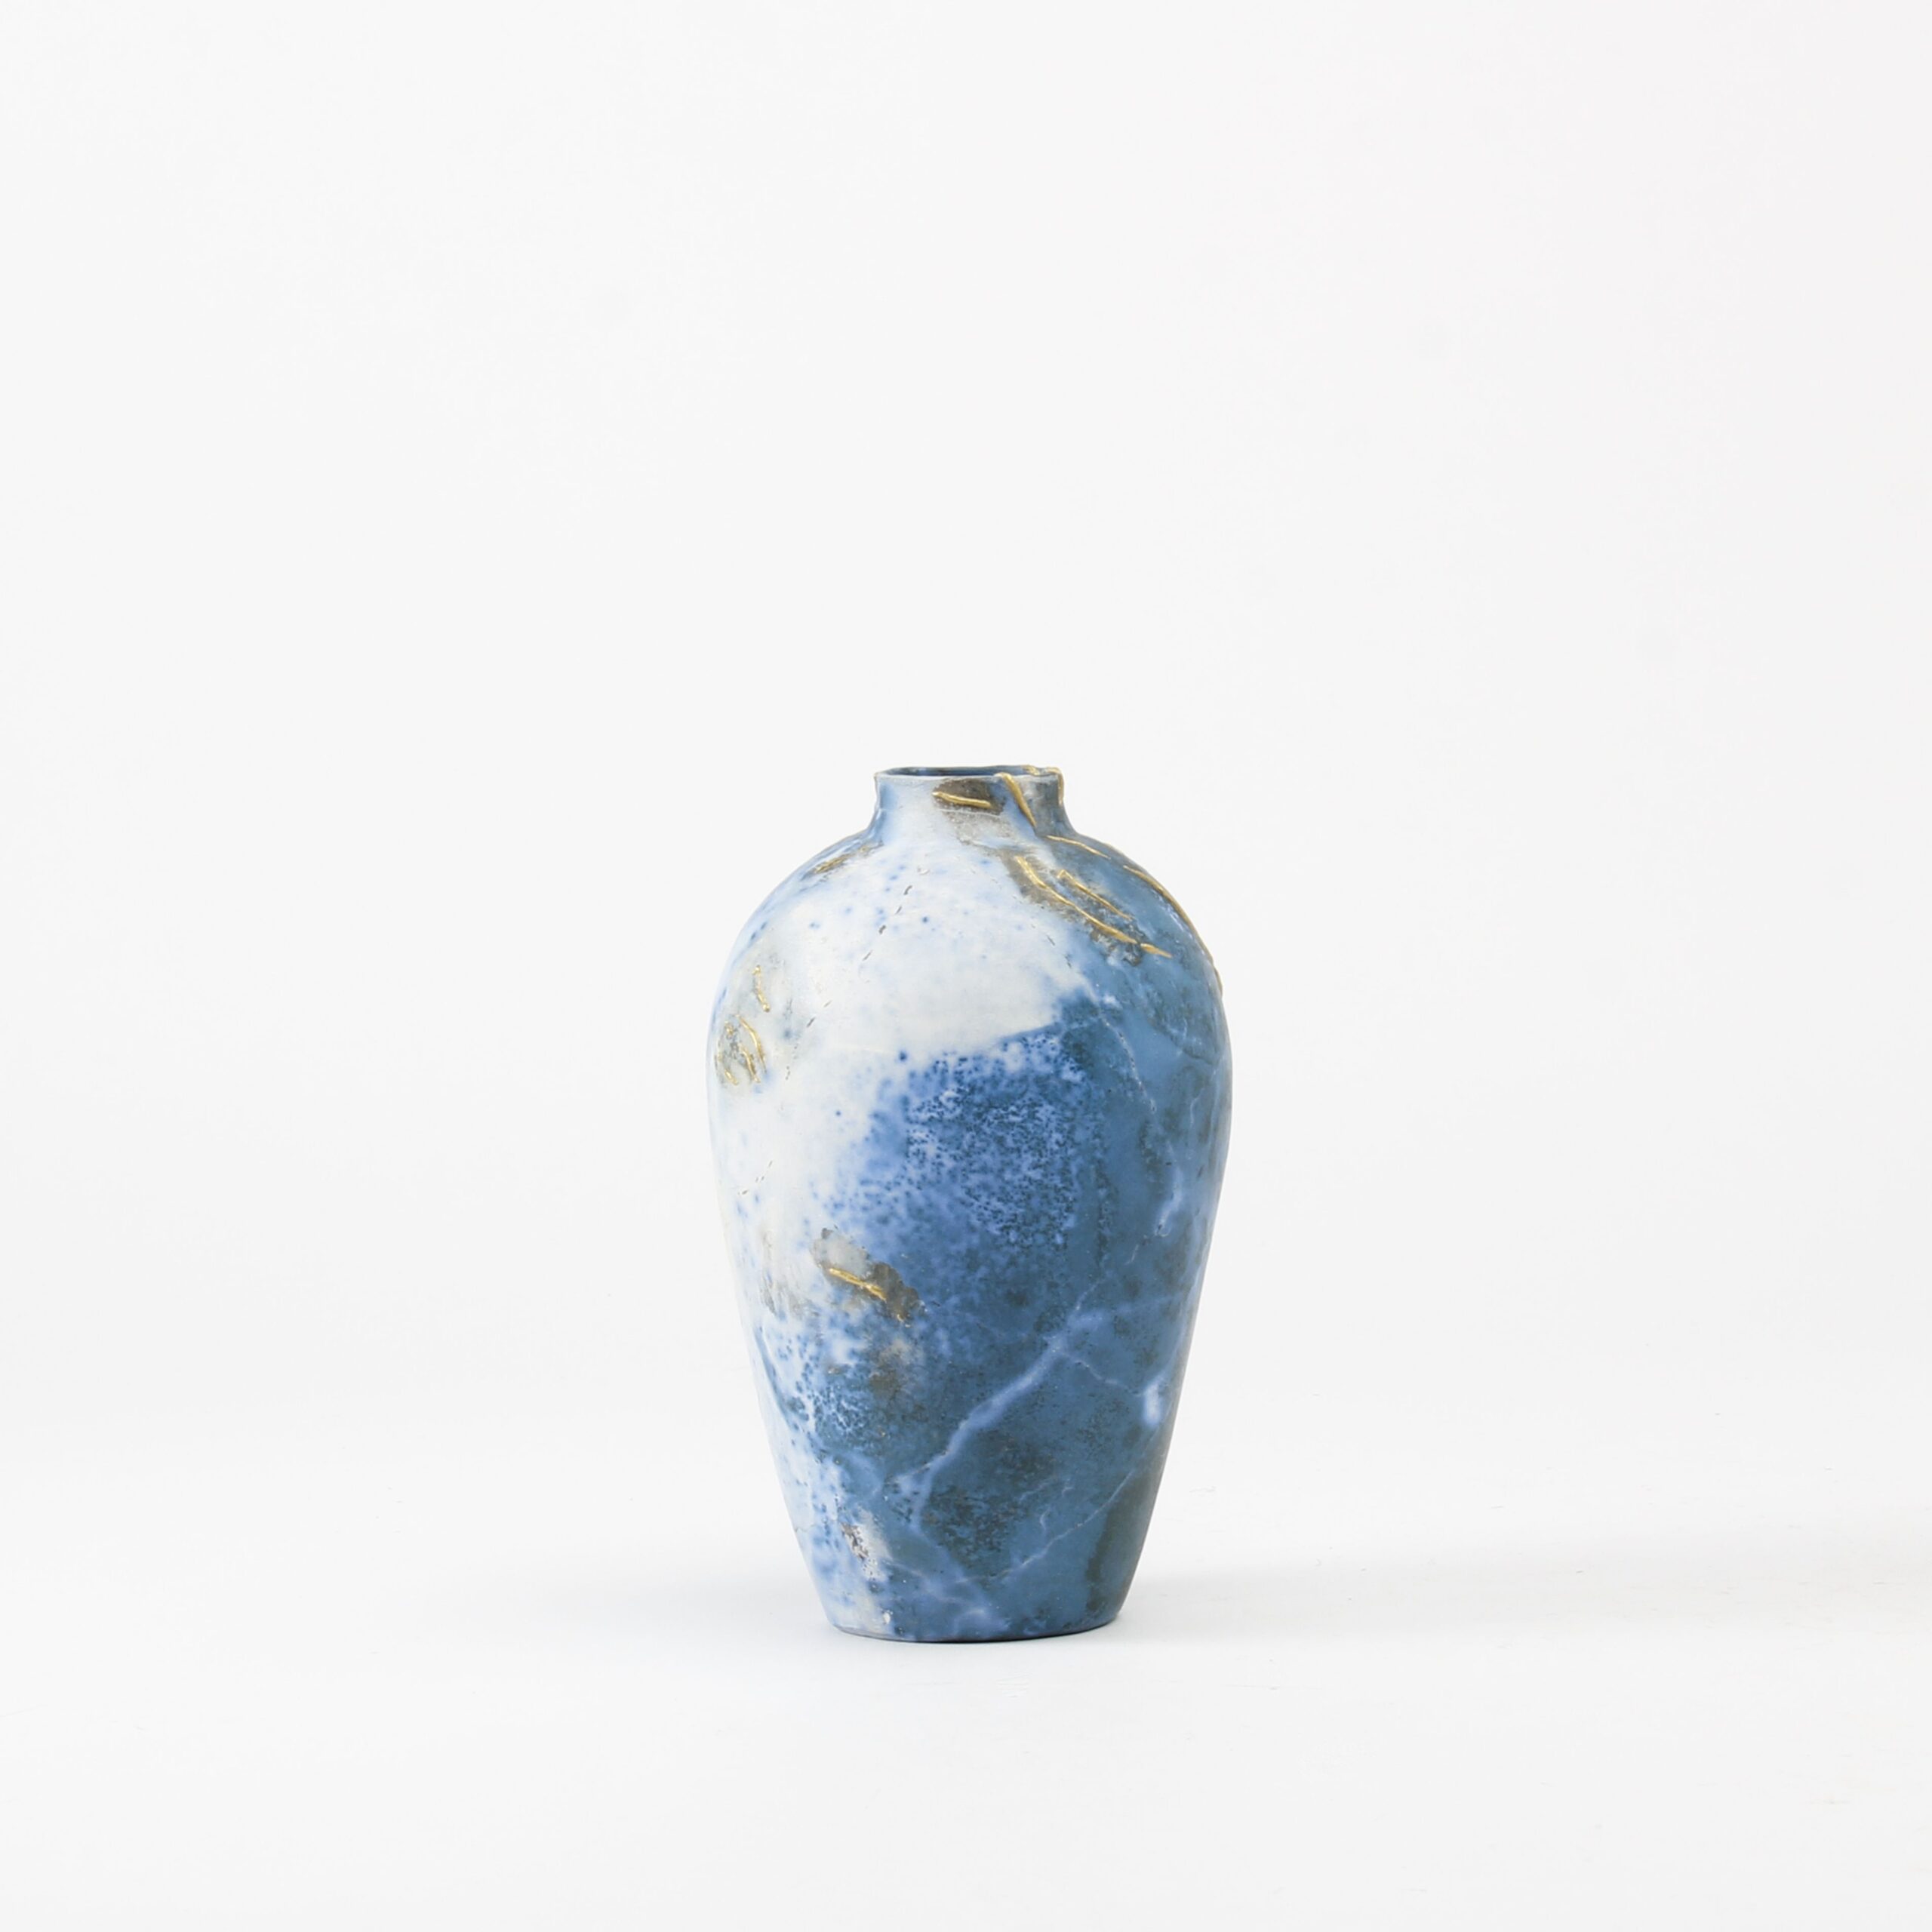 Alison Brannen: Medium Classic Urn Product Image 4 of 5